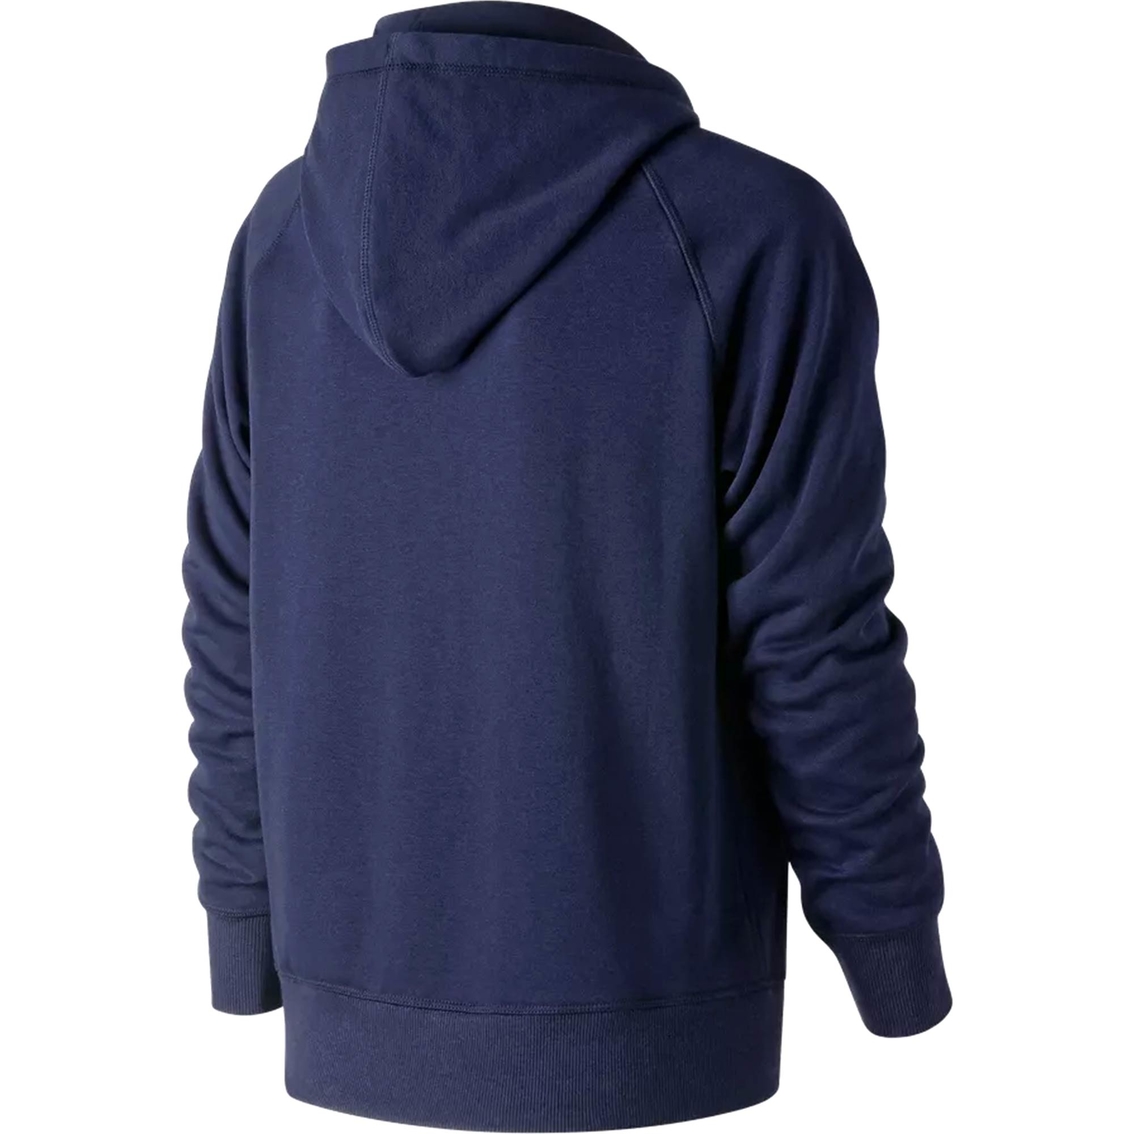 Nb Essentials Hoodie Light Purple | Hoodies & Sweatshirts | Clothing ...